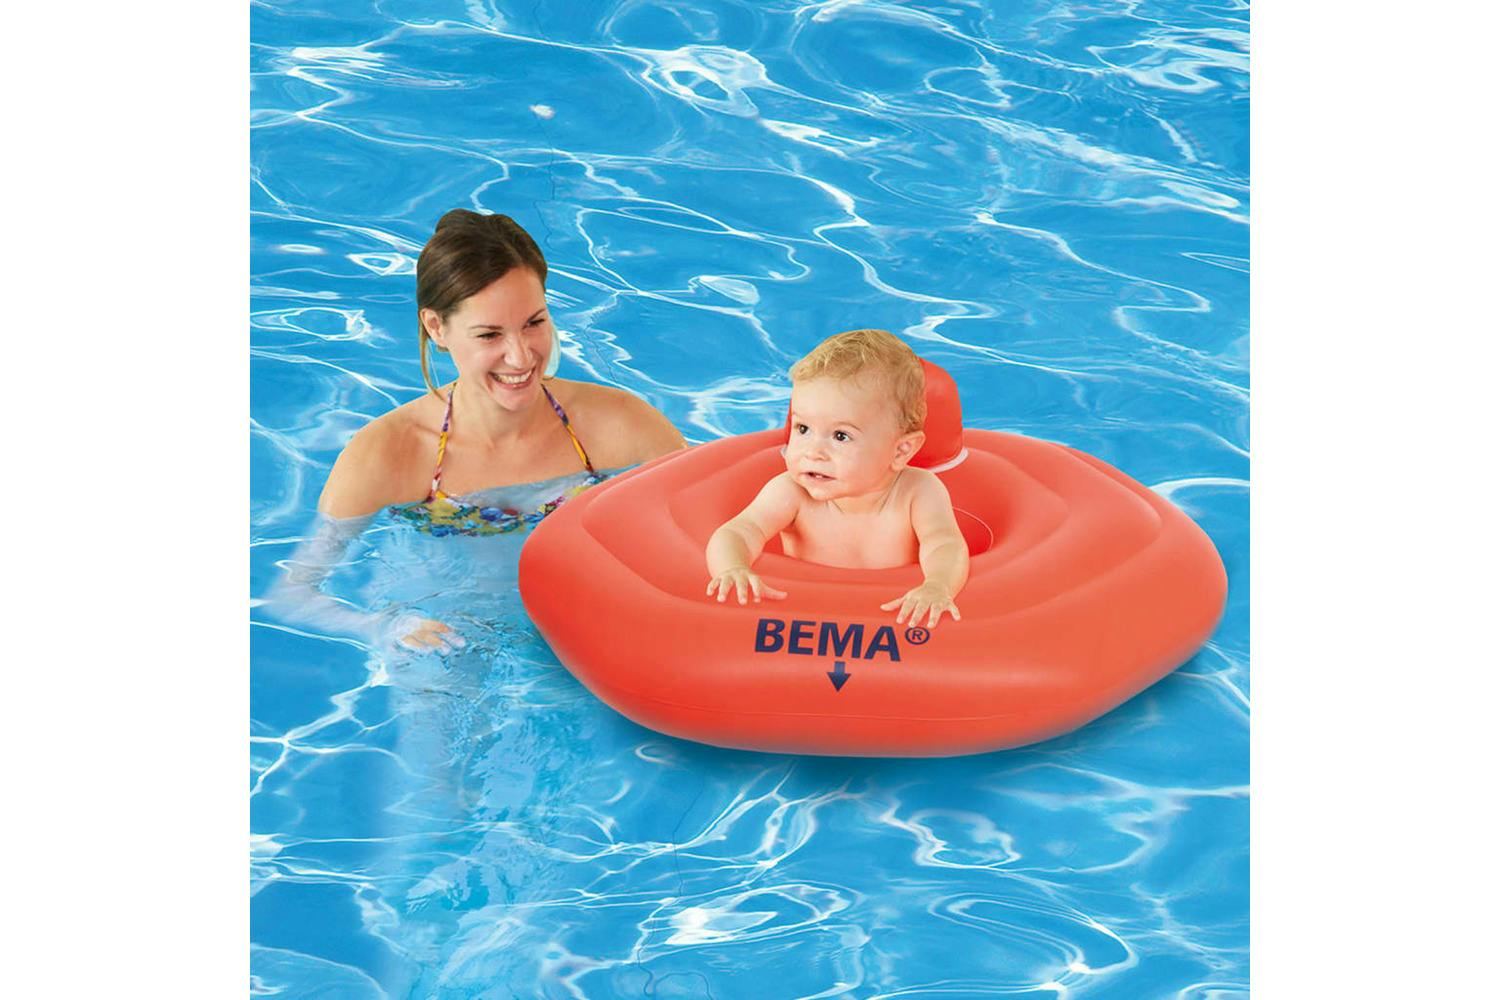 Bema 445616 Baby Swimming Seat Pvc Orange